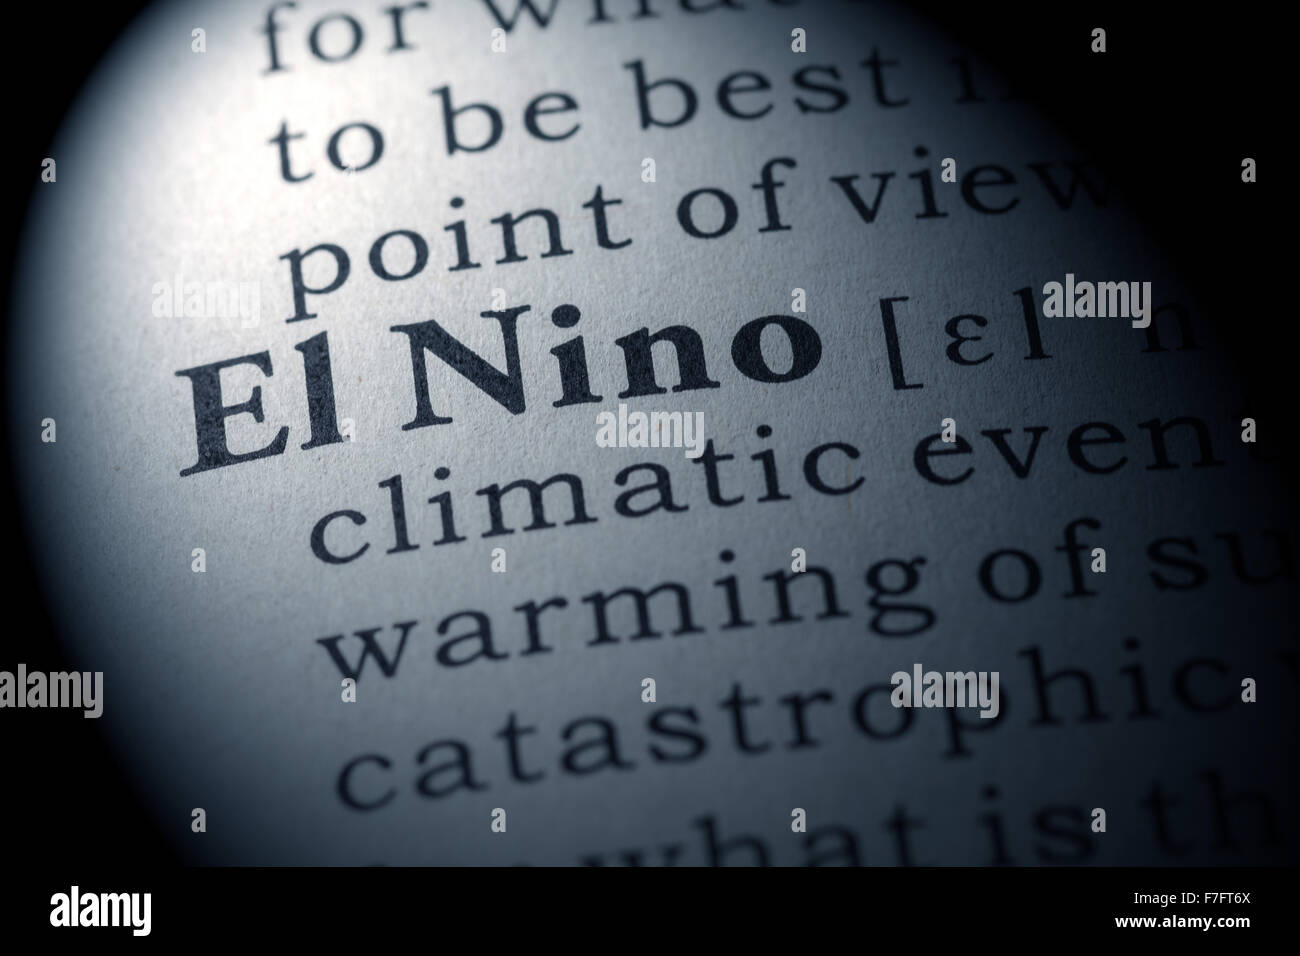 Gefälschte Wörterbuch, Wörterbuch-Definition des Wortes El Nino Stockfoto